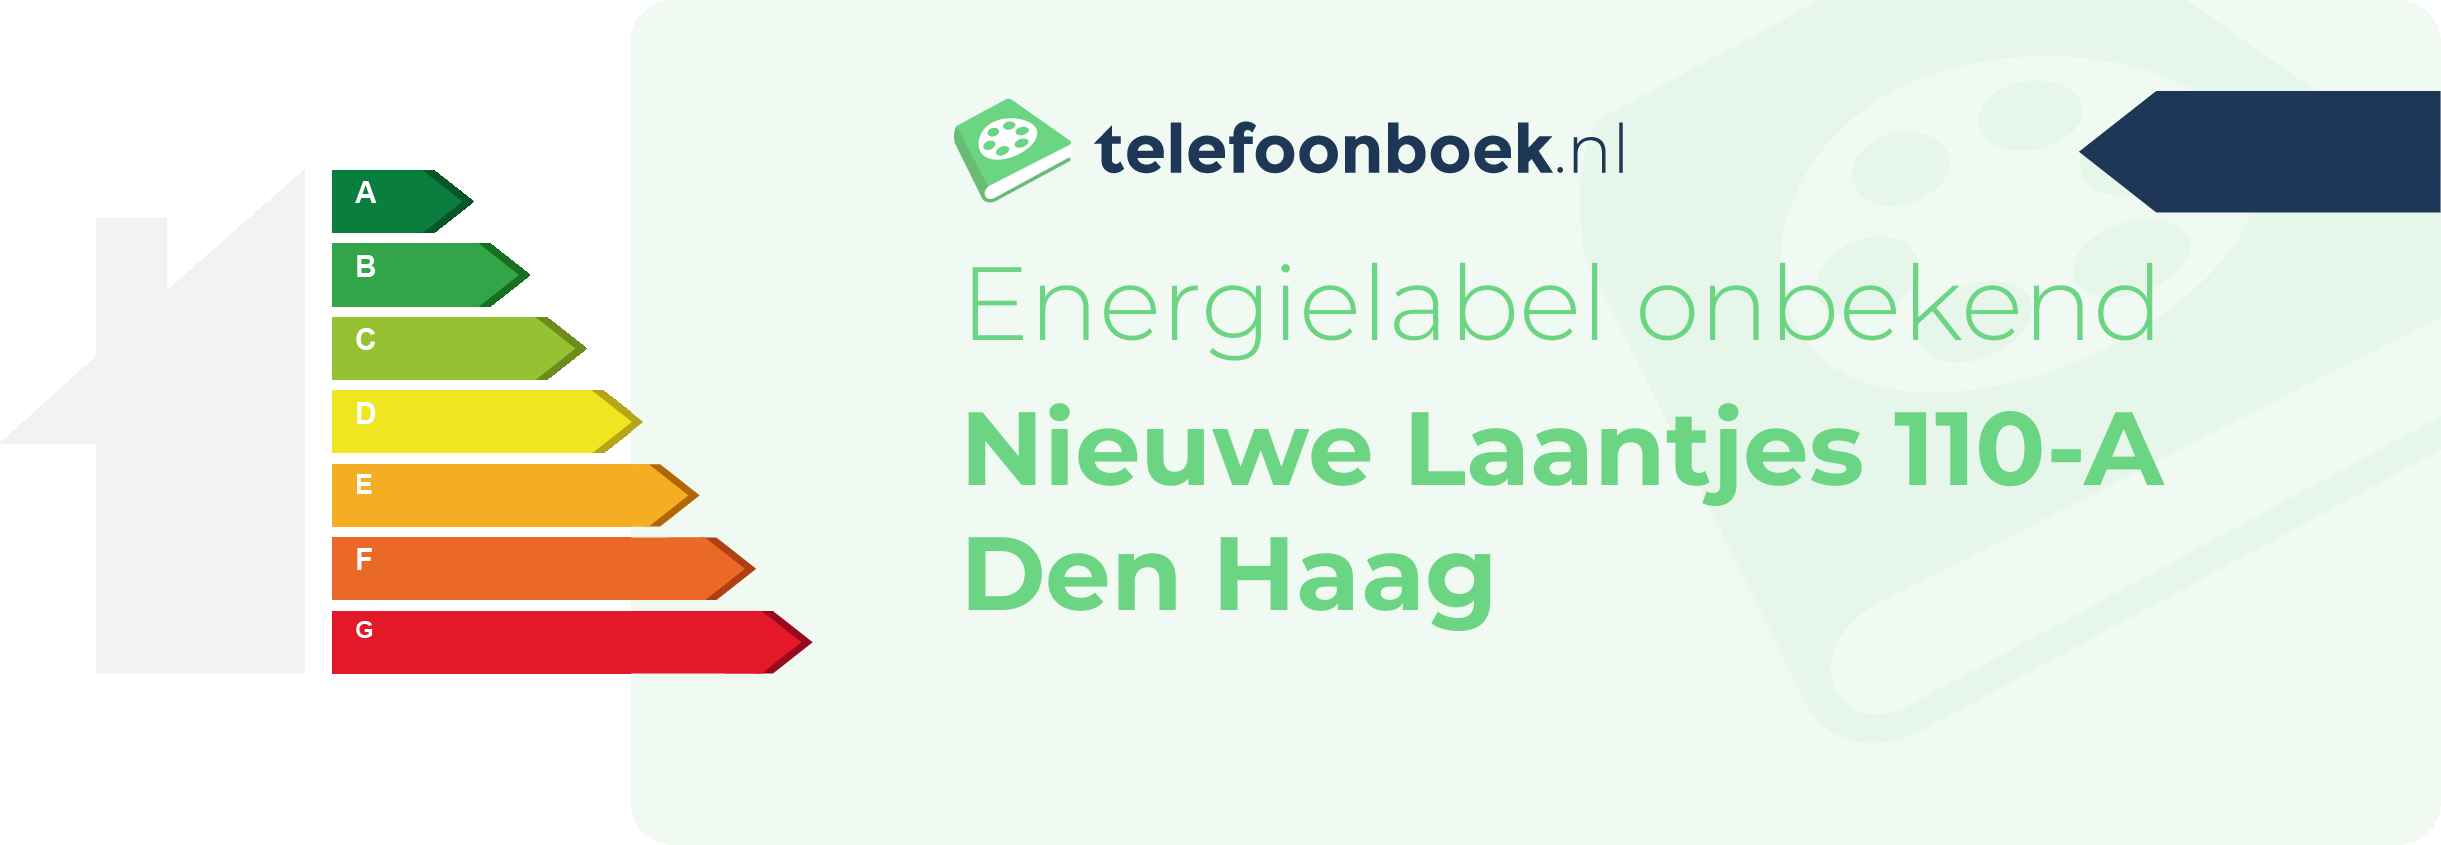 Energielabel Nieuwe Laantjes 110-A Den Haag